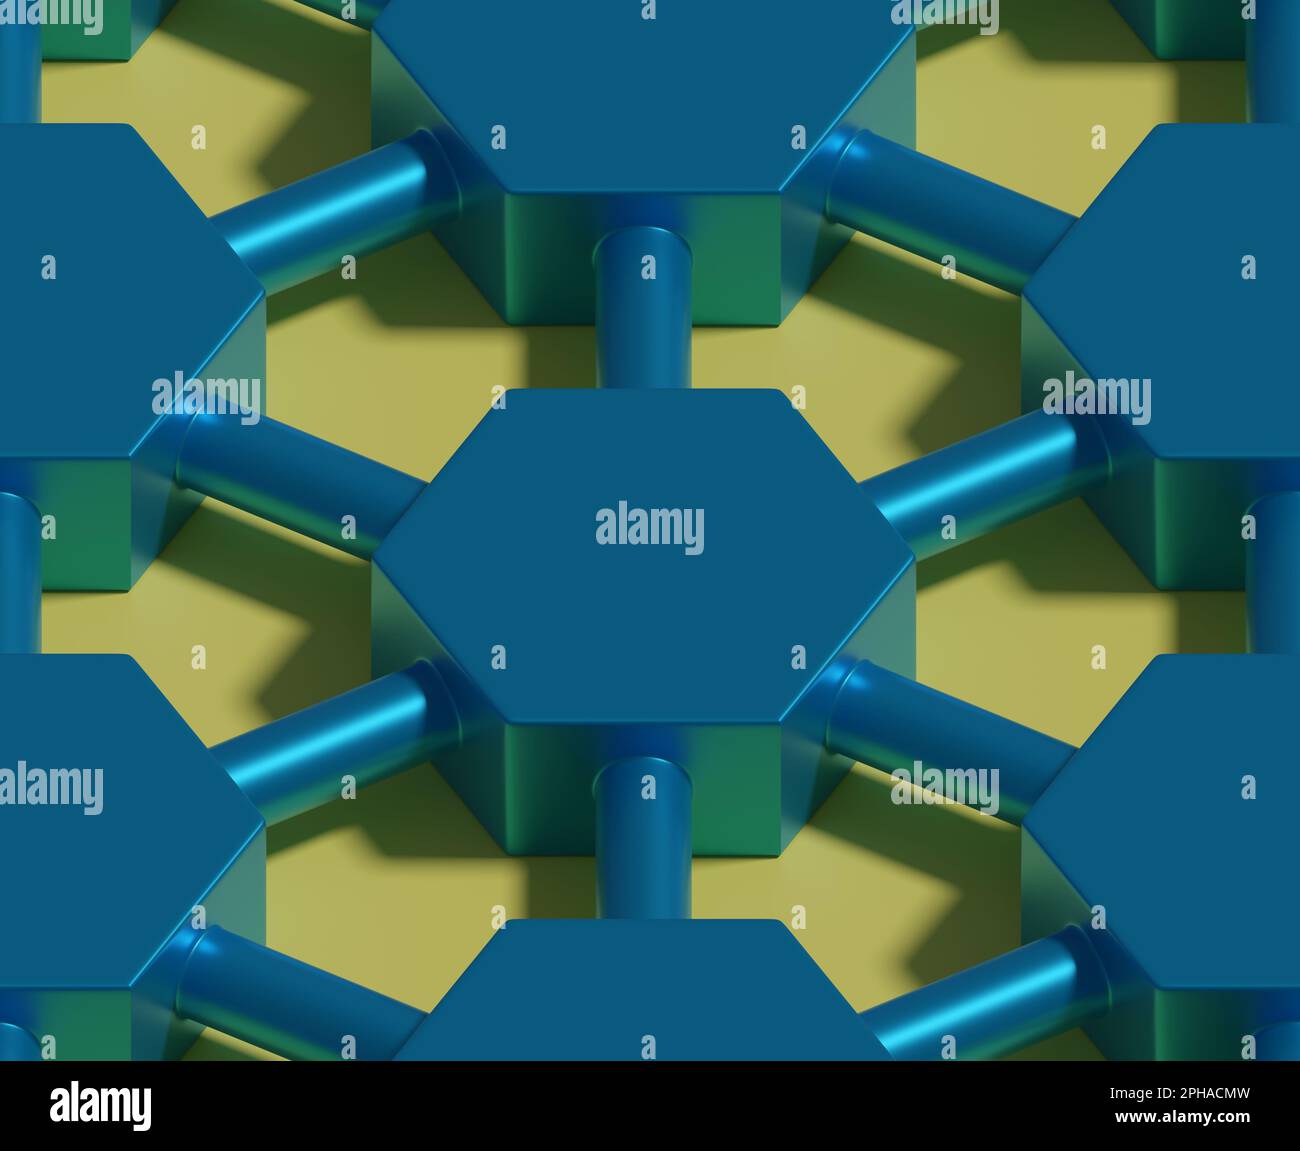 Blaue sechseckige Prismen, die durch nahtlose Rohre miteinander verbunden sind. Isometrischer Hintergrund. 3D Abbildung. Stockfoto